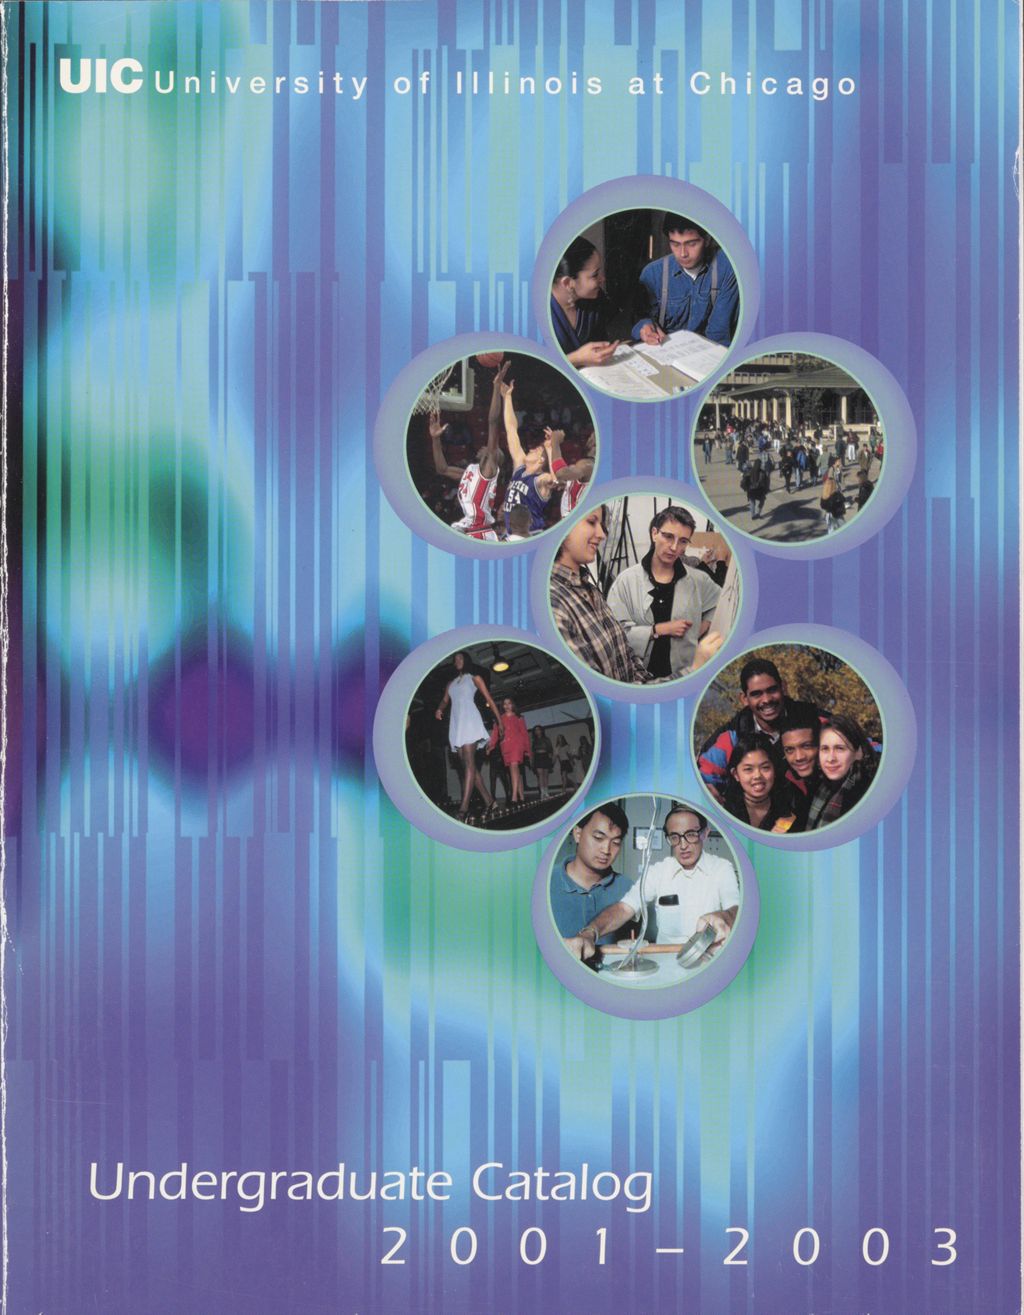 Undergraduate Catalog, 2001-2003